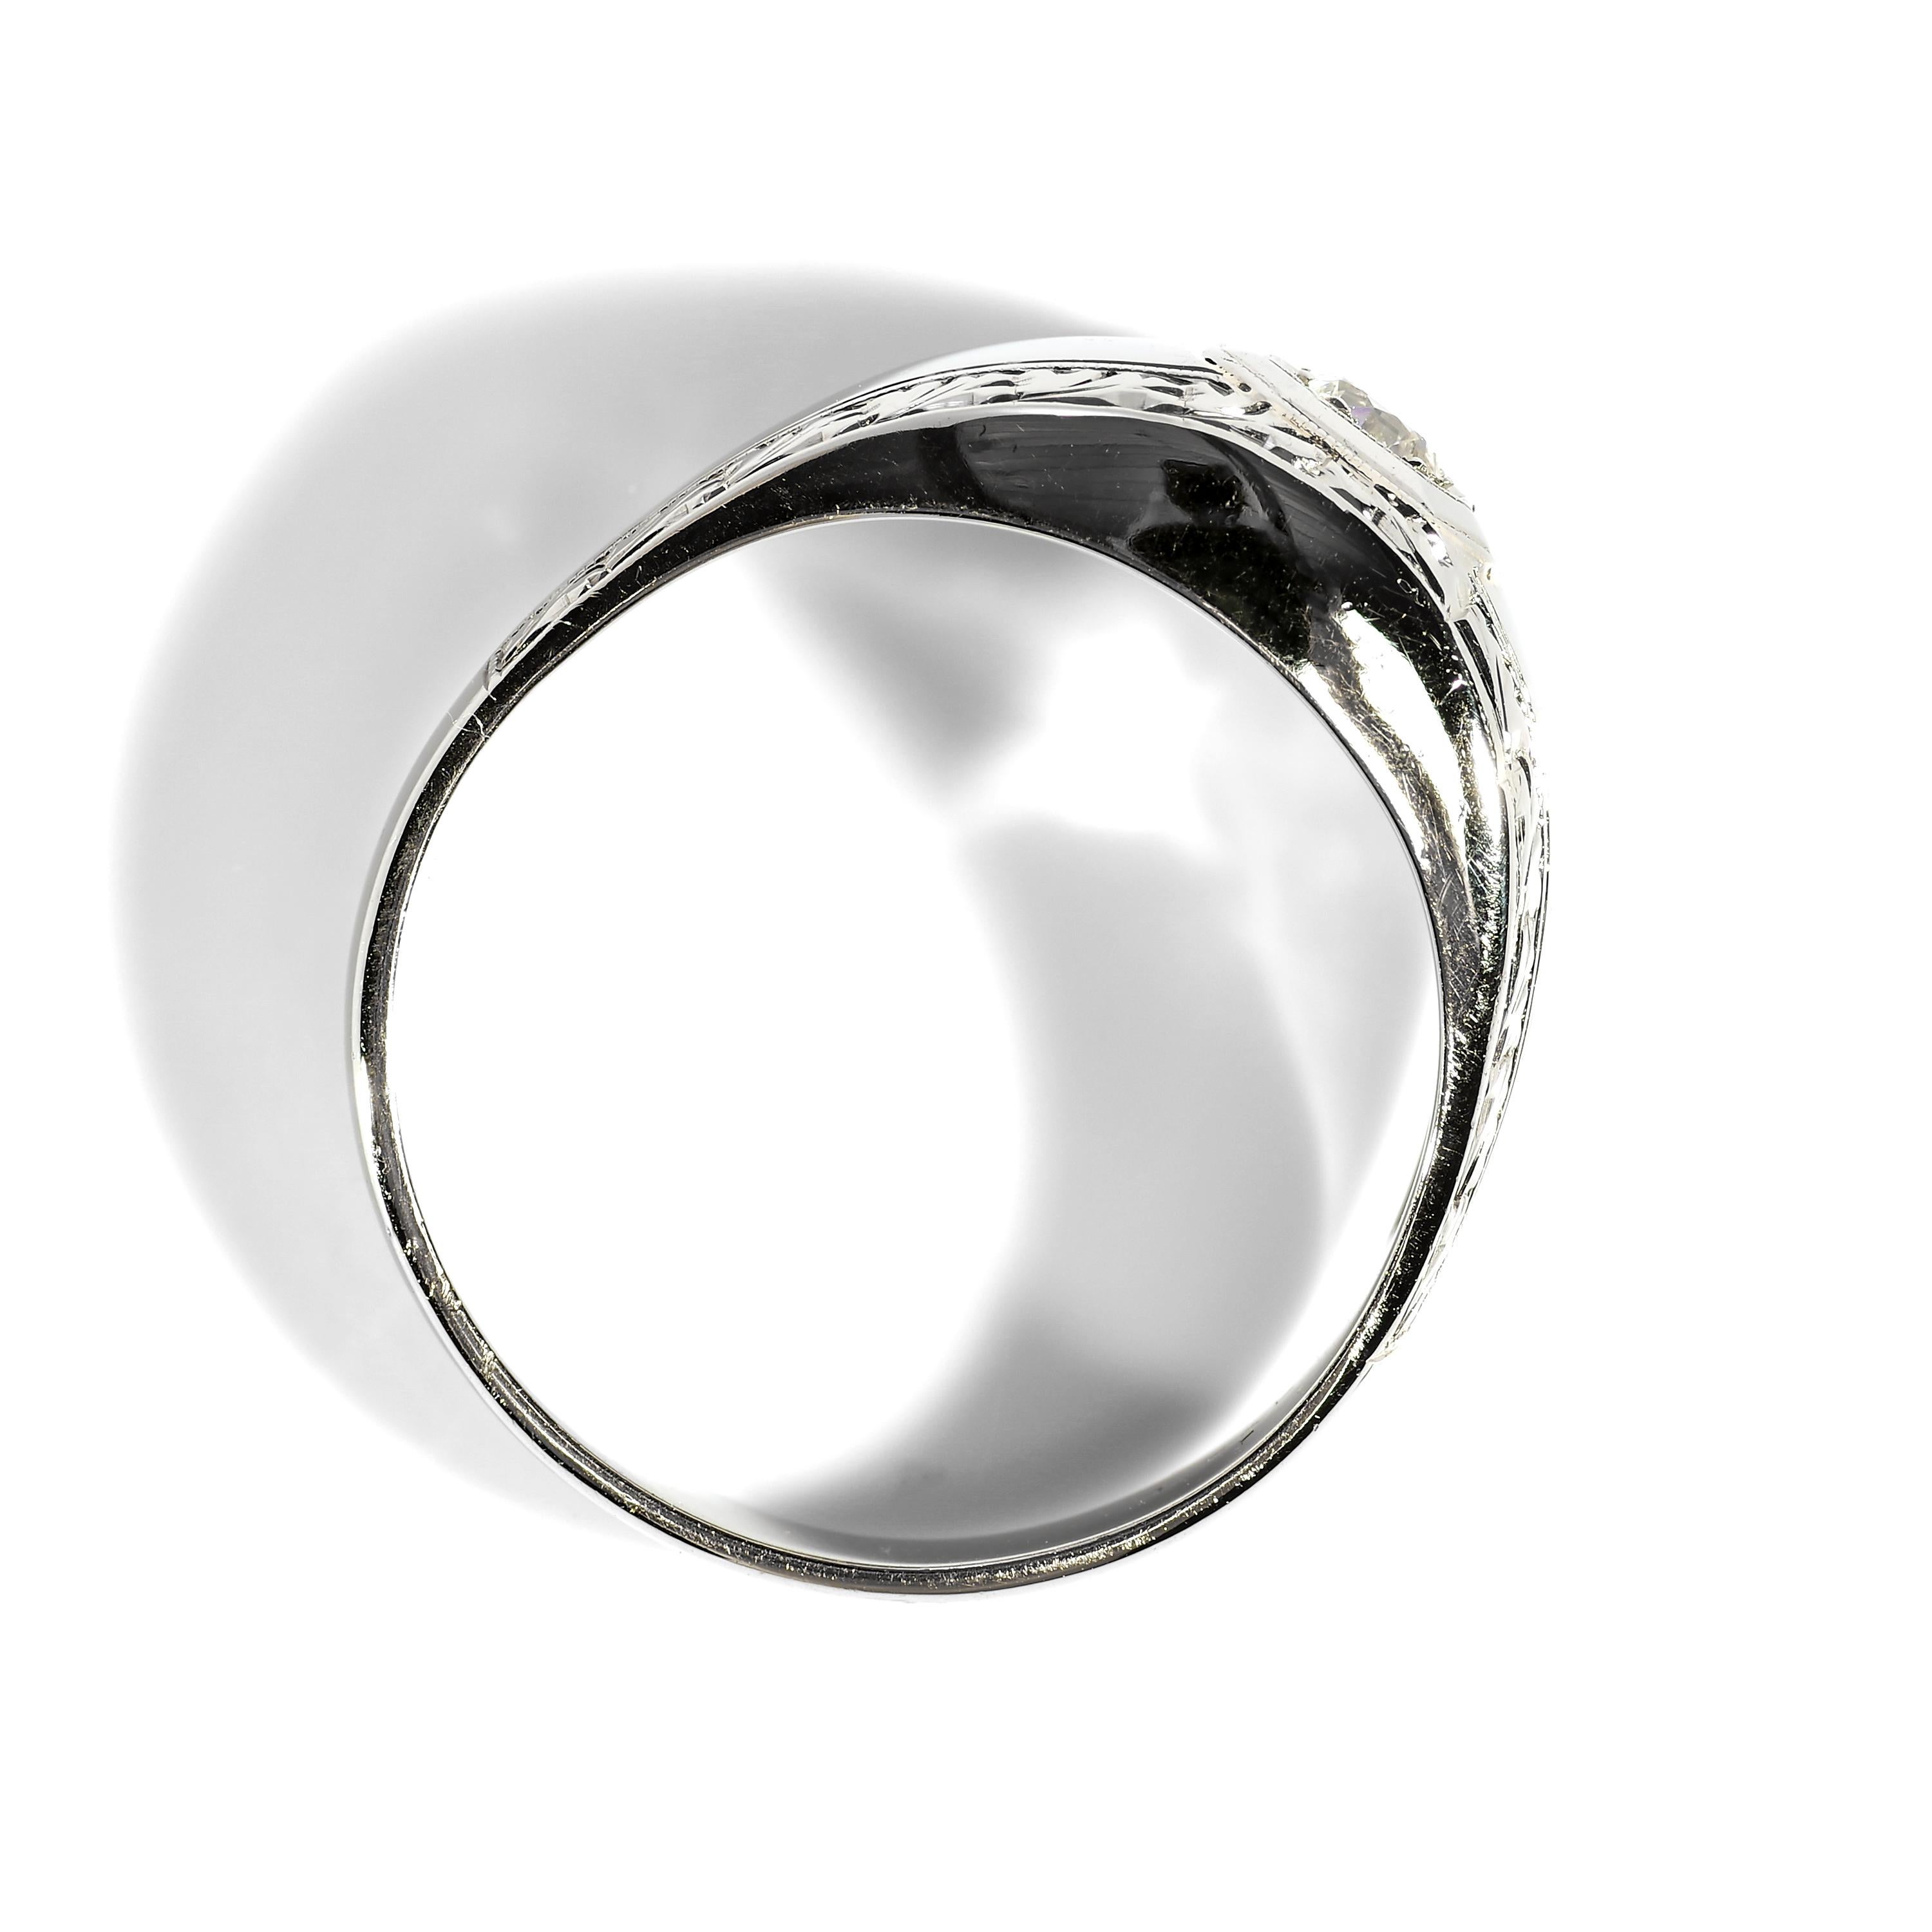 Women's or Men's Men's Diamond Ring Understated Art Deco Elegance